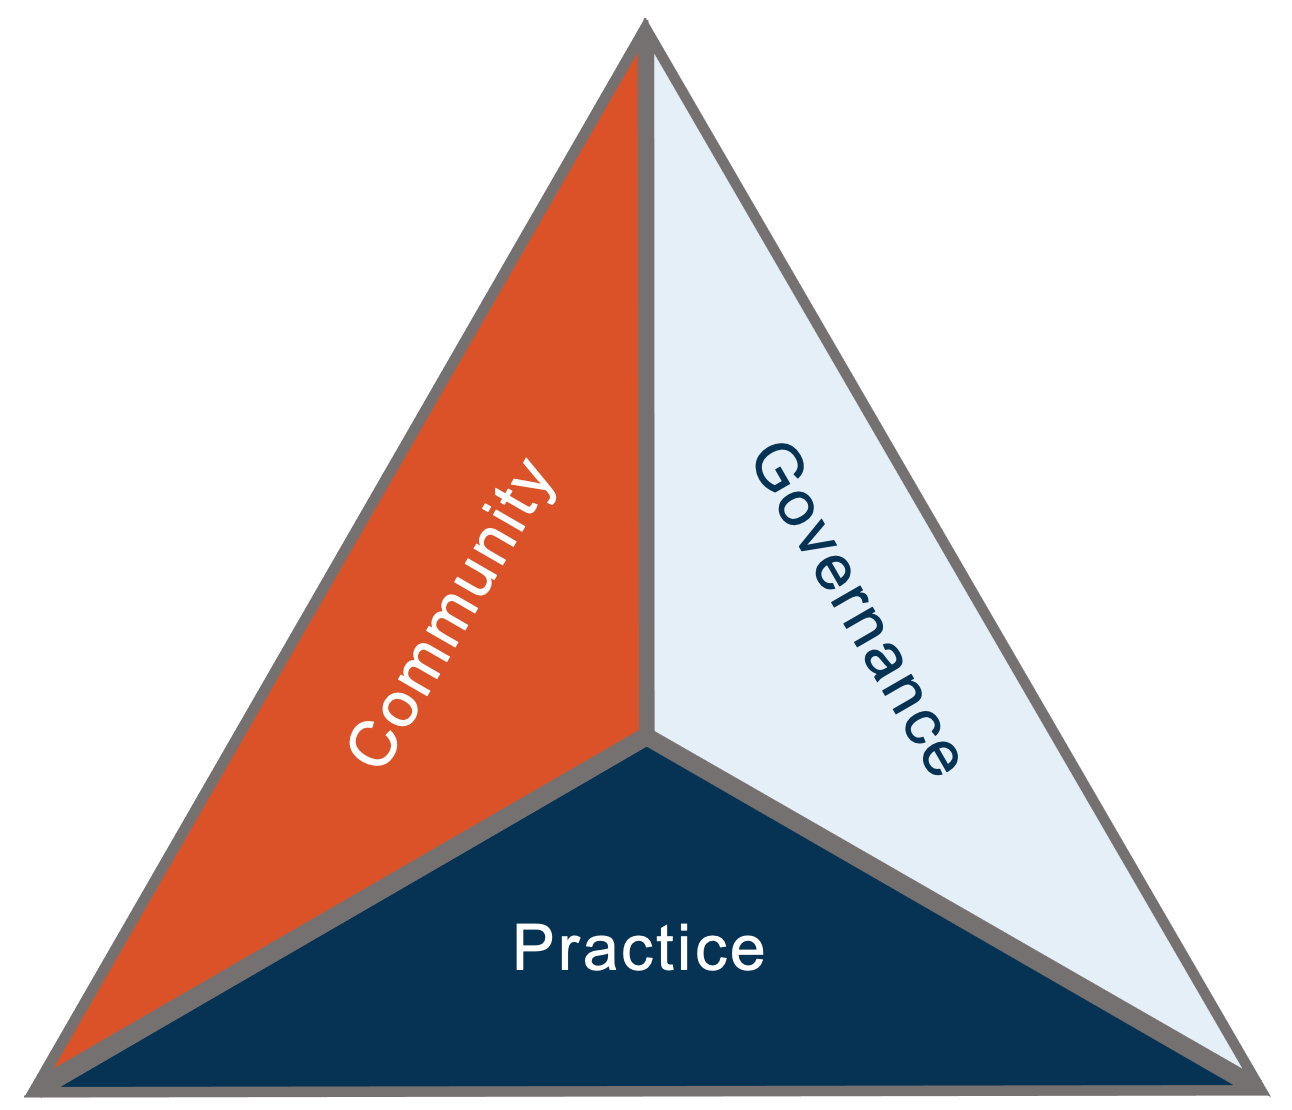 NCMA DE&I Triad: Community, Governance, and Practice